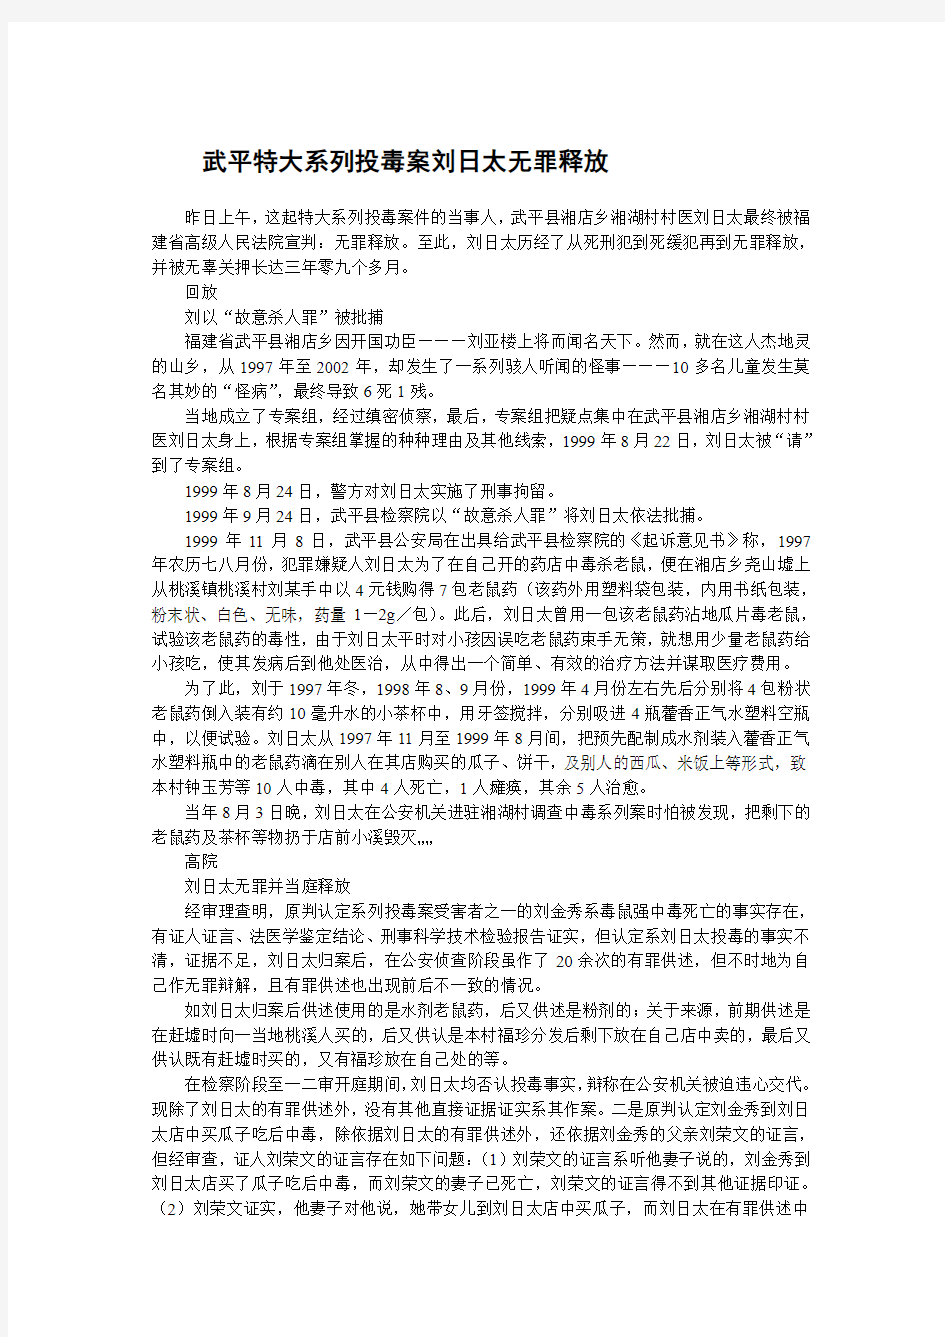 【大案纪实终结版】武平特大系列投毒案刘日太无罪释放